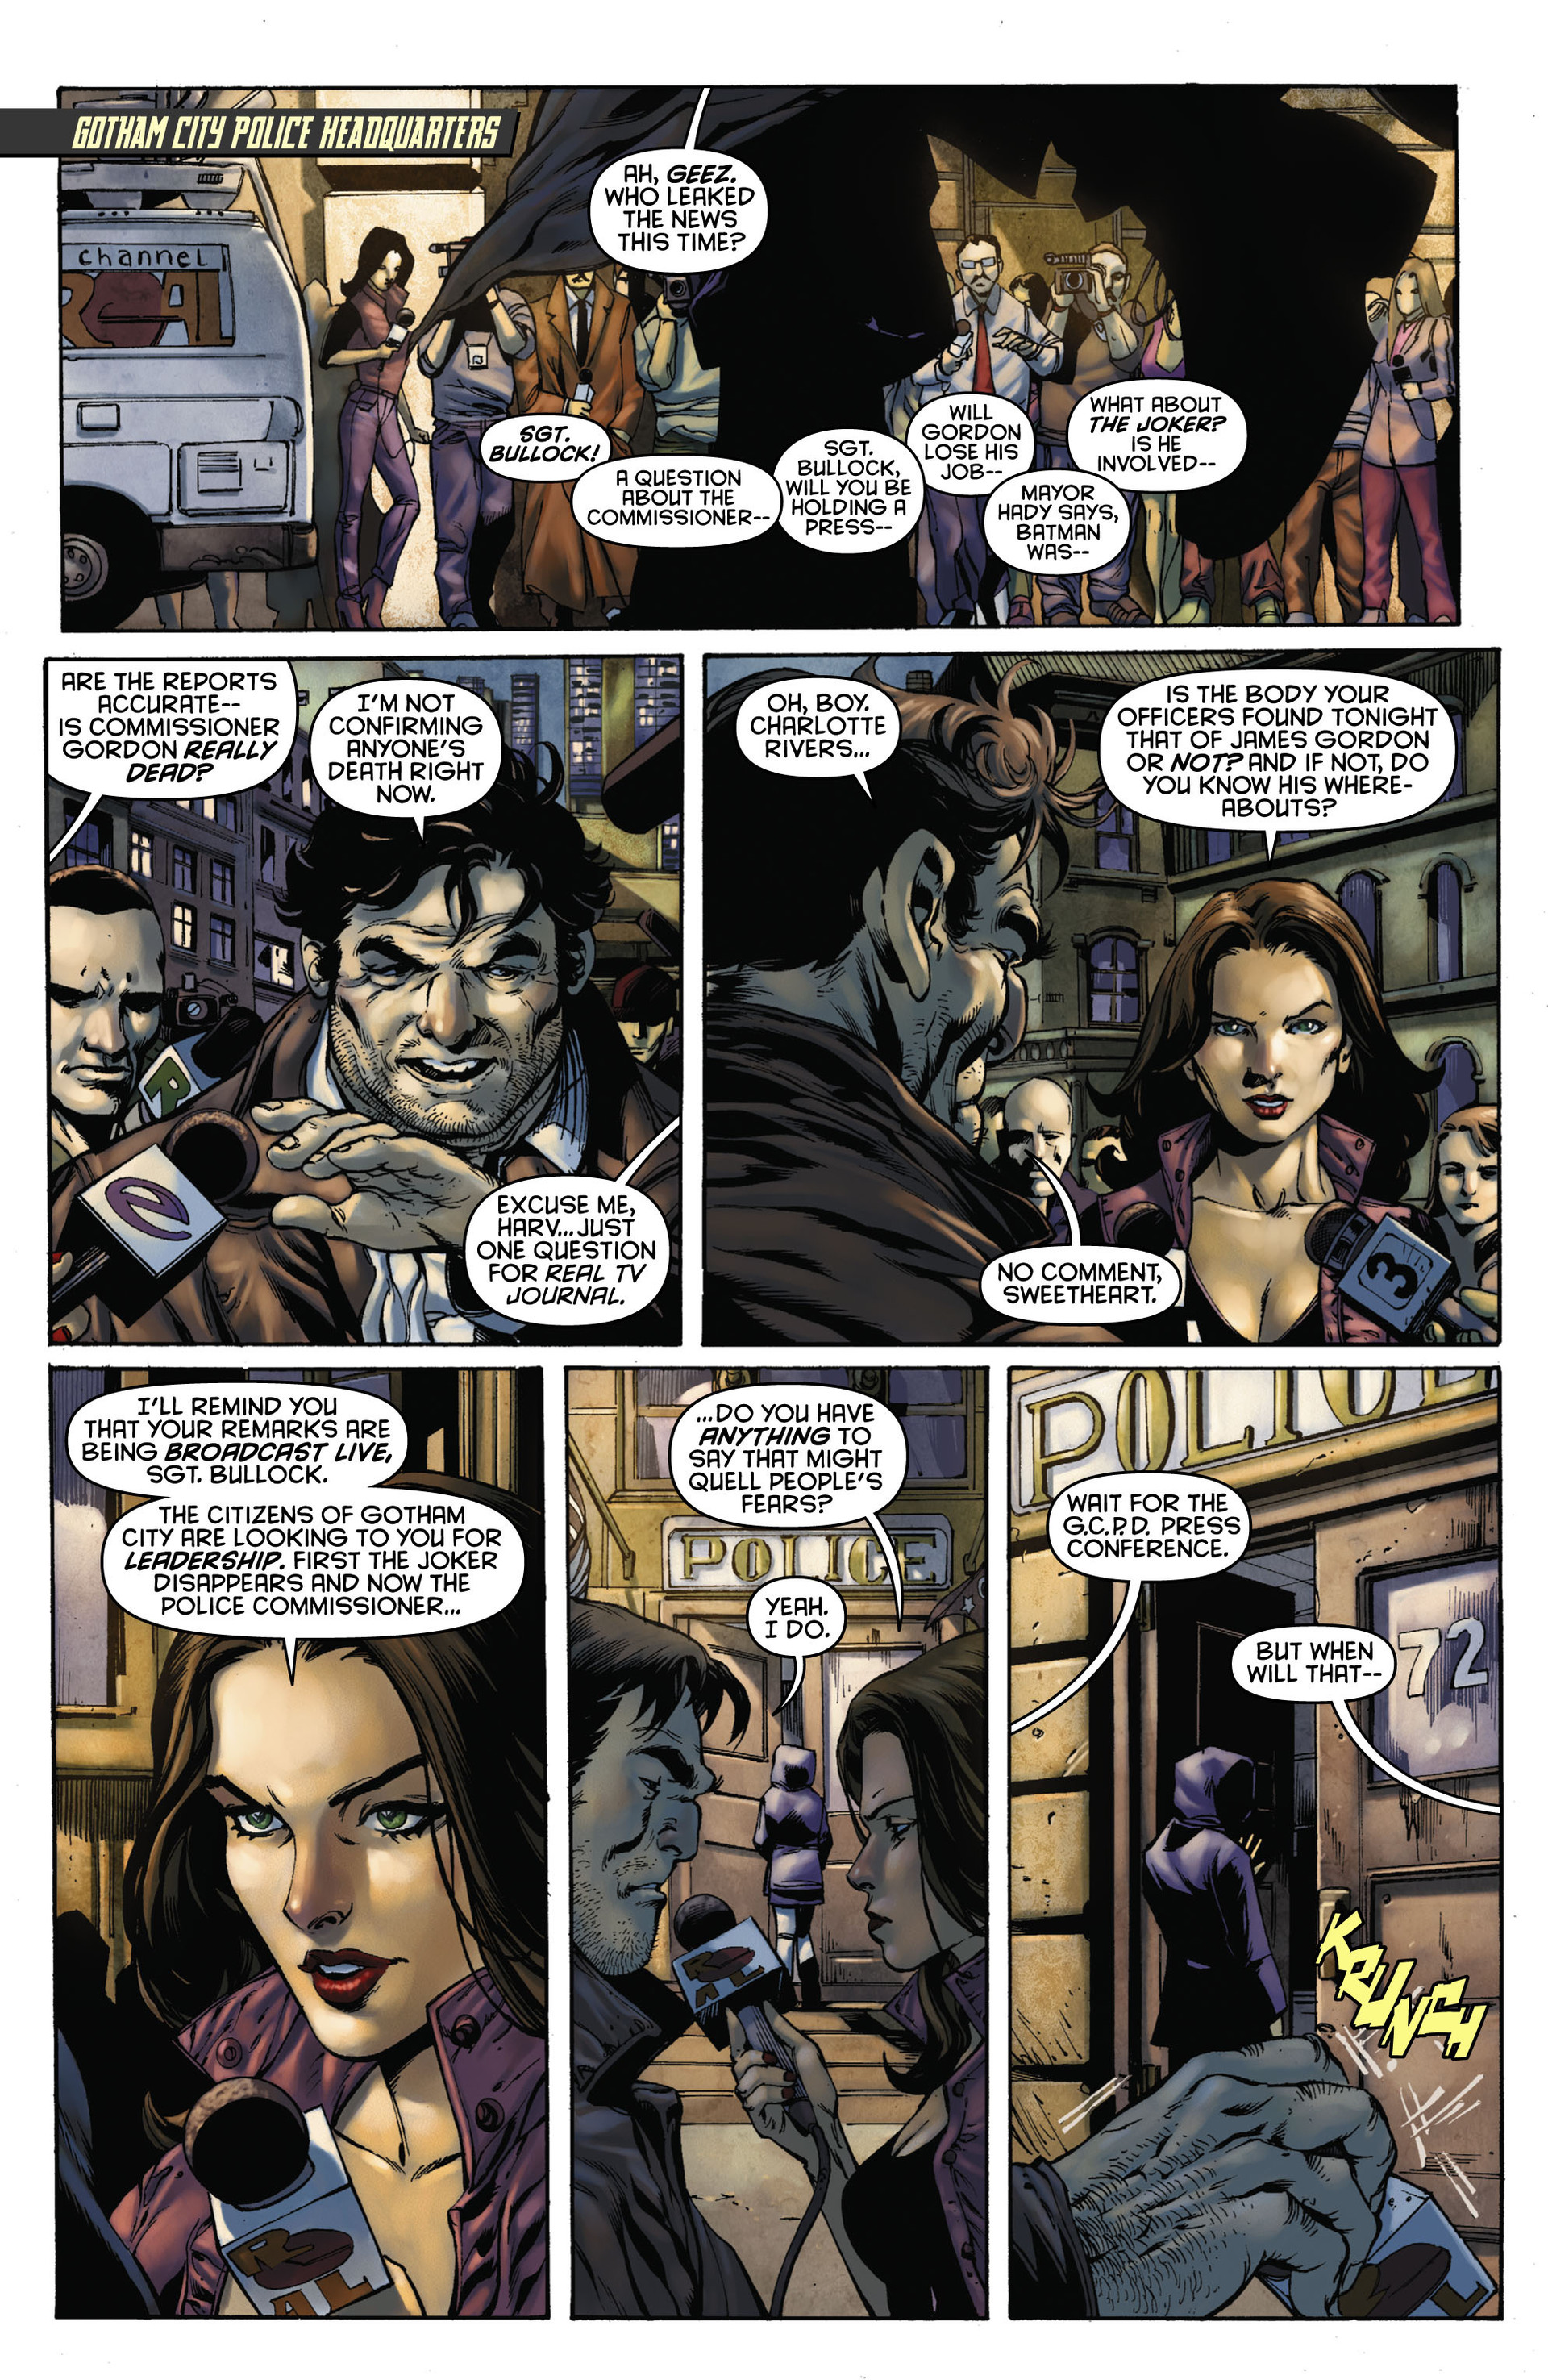 Read online Batman: Detective Comics comic -  Issue # TPB 1 - 61